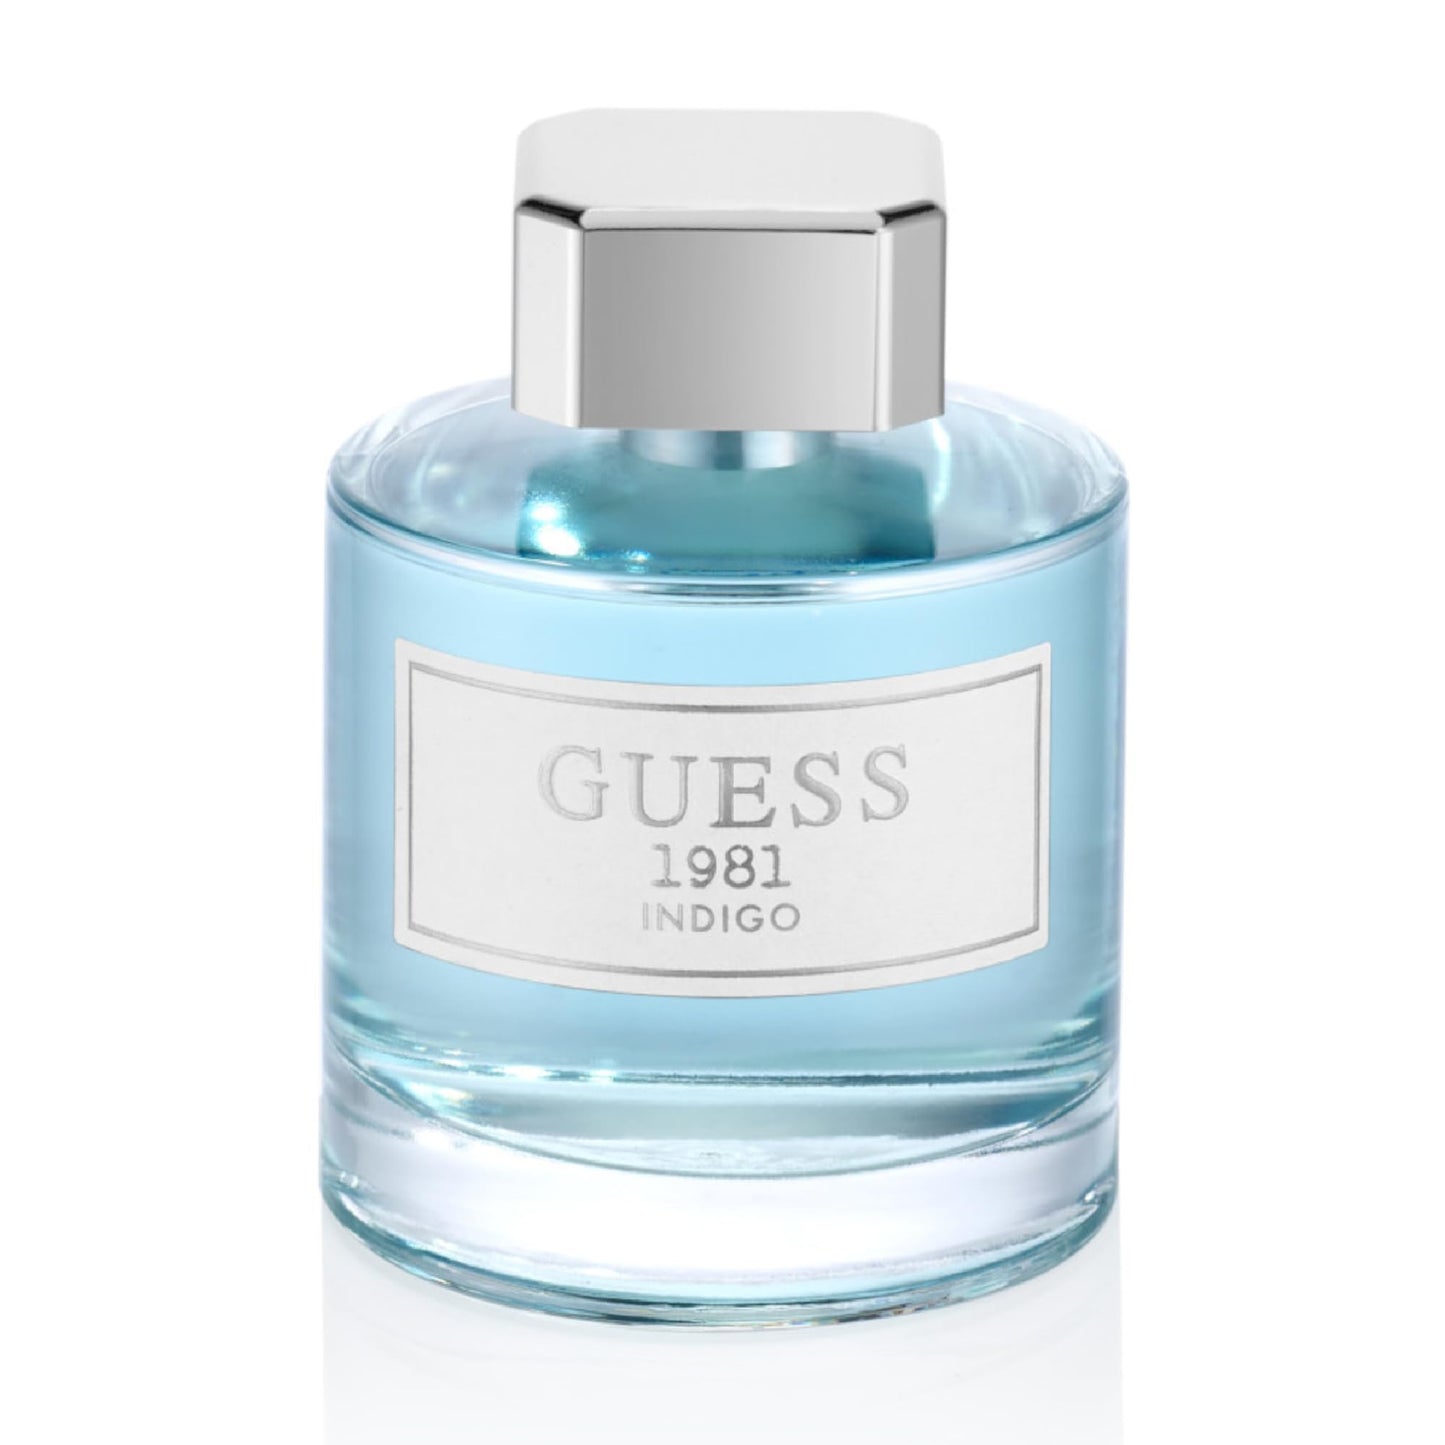 Guess Perfume - 1981 Indigo perfumes for women, 100 ml EDT Spray